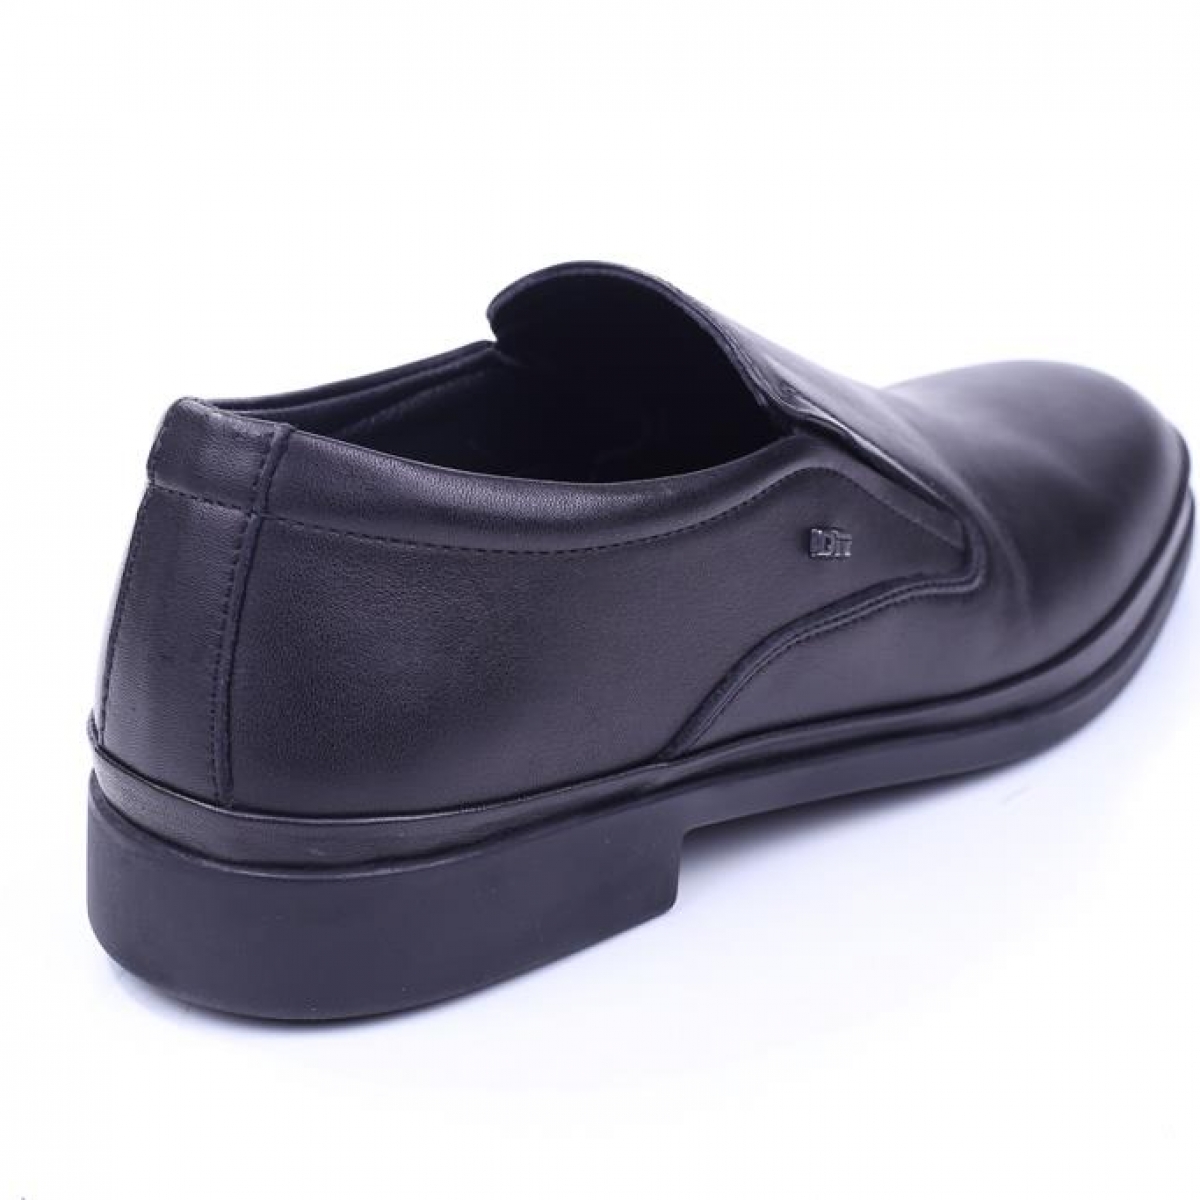 Flo Dr. Jell ‘s 1K6292-J72 Erkek Siyah Ortopedik Jell Taban Günlük Ayakkabı. 3